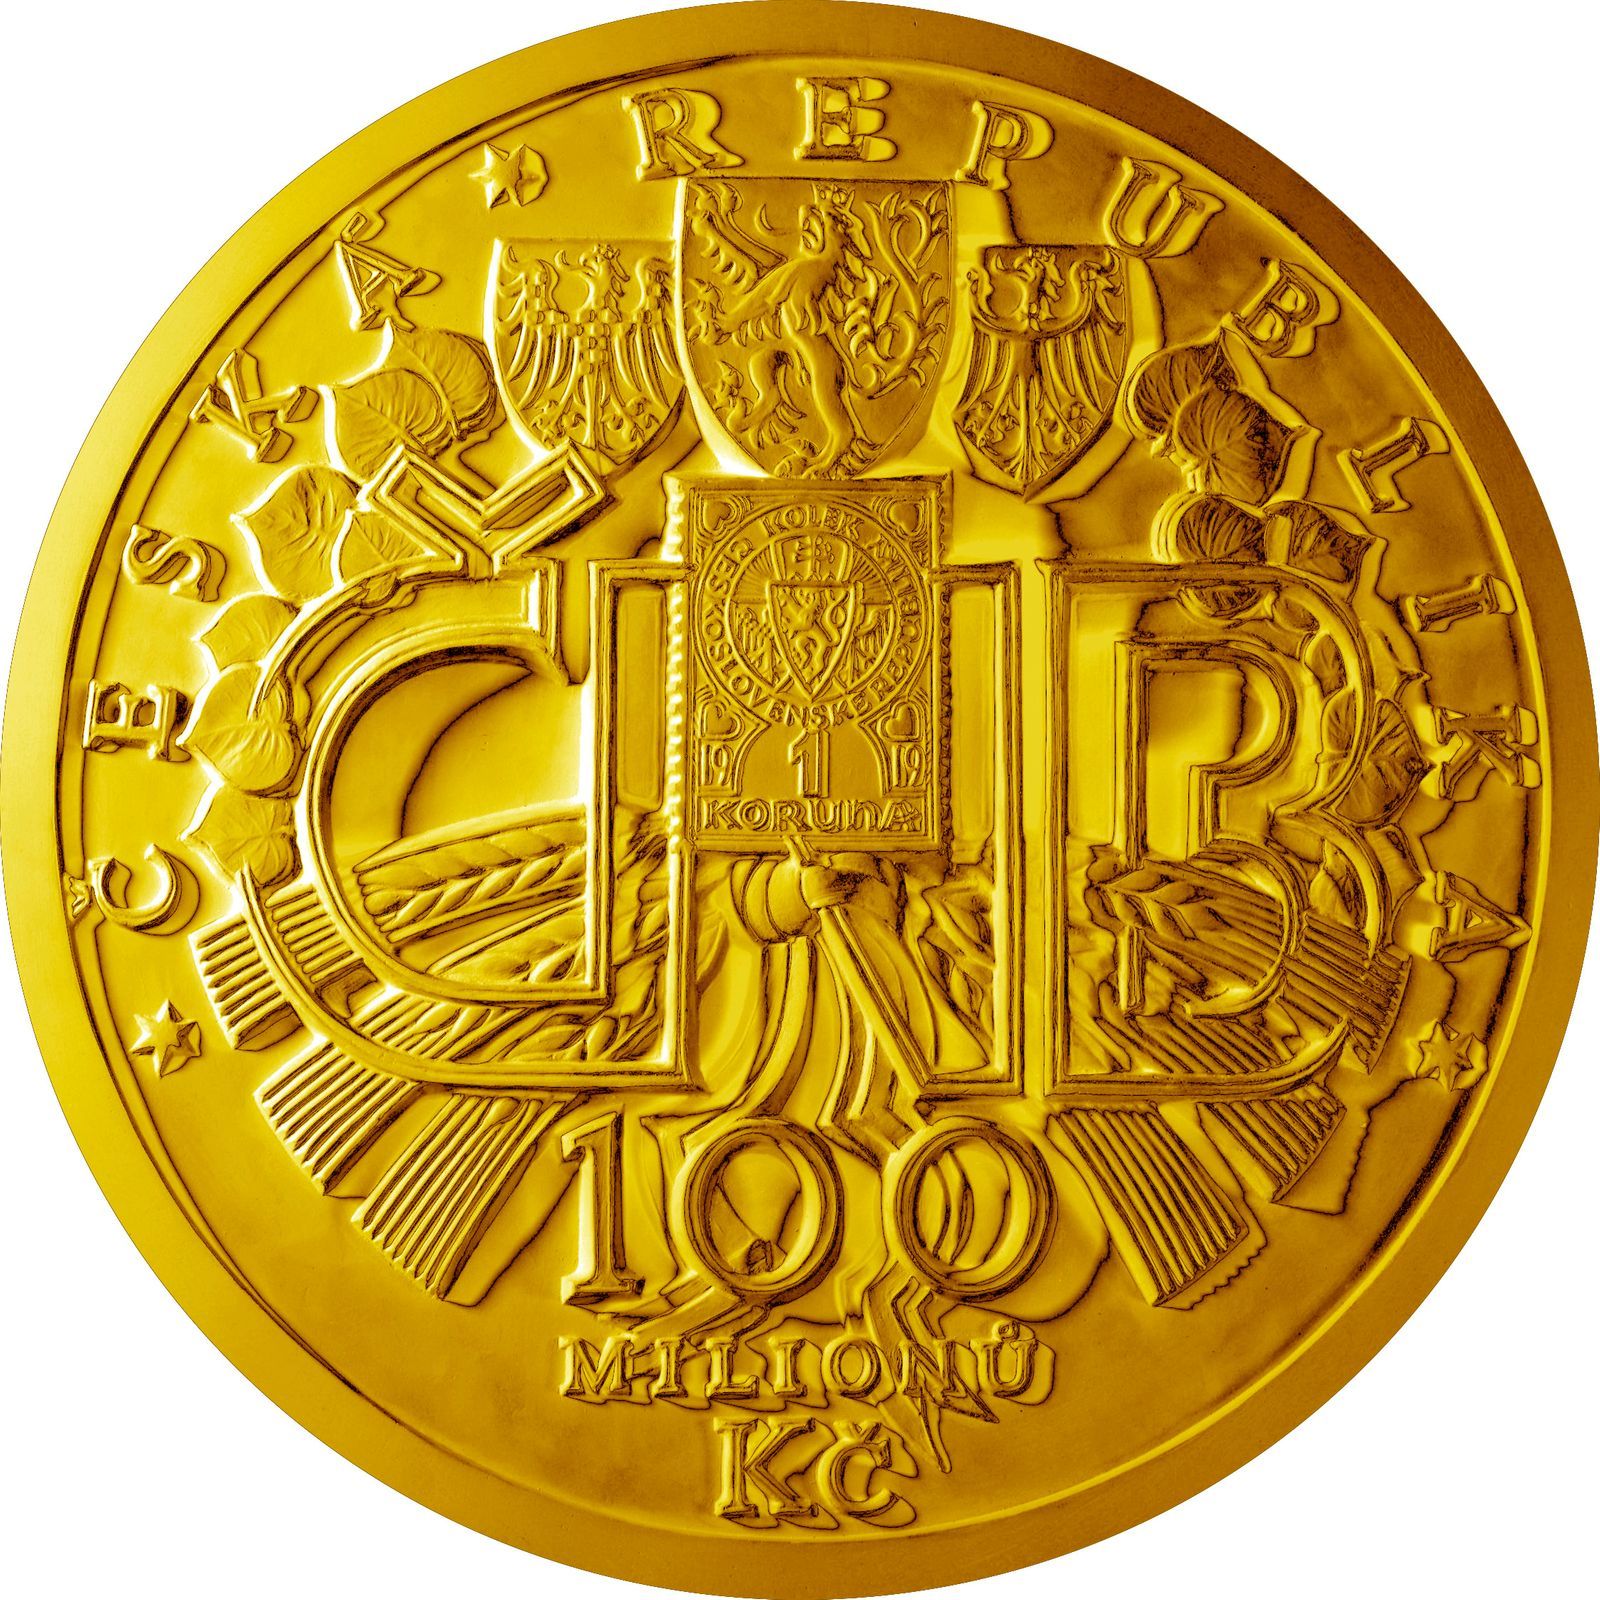 Mince vydané ke 100. výročí zavedení československé koruny